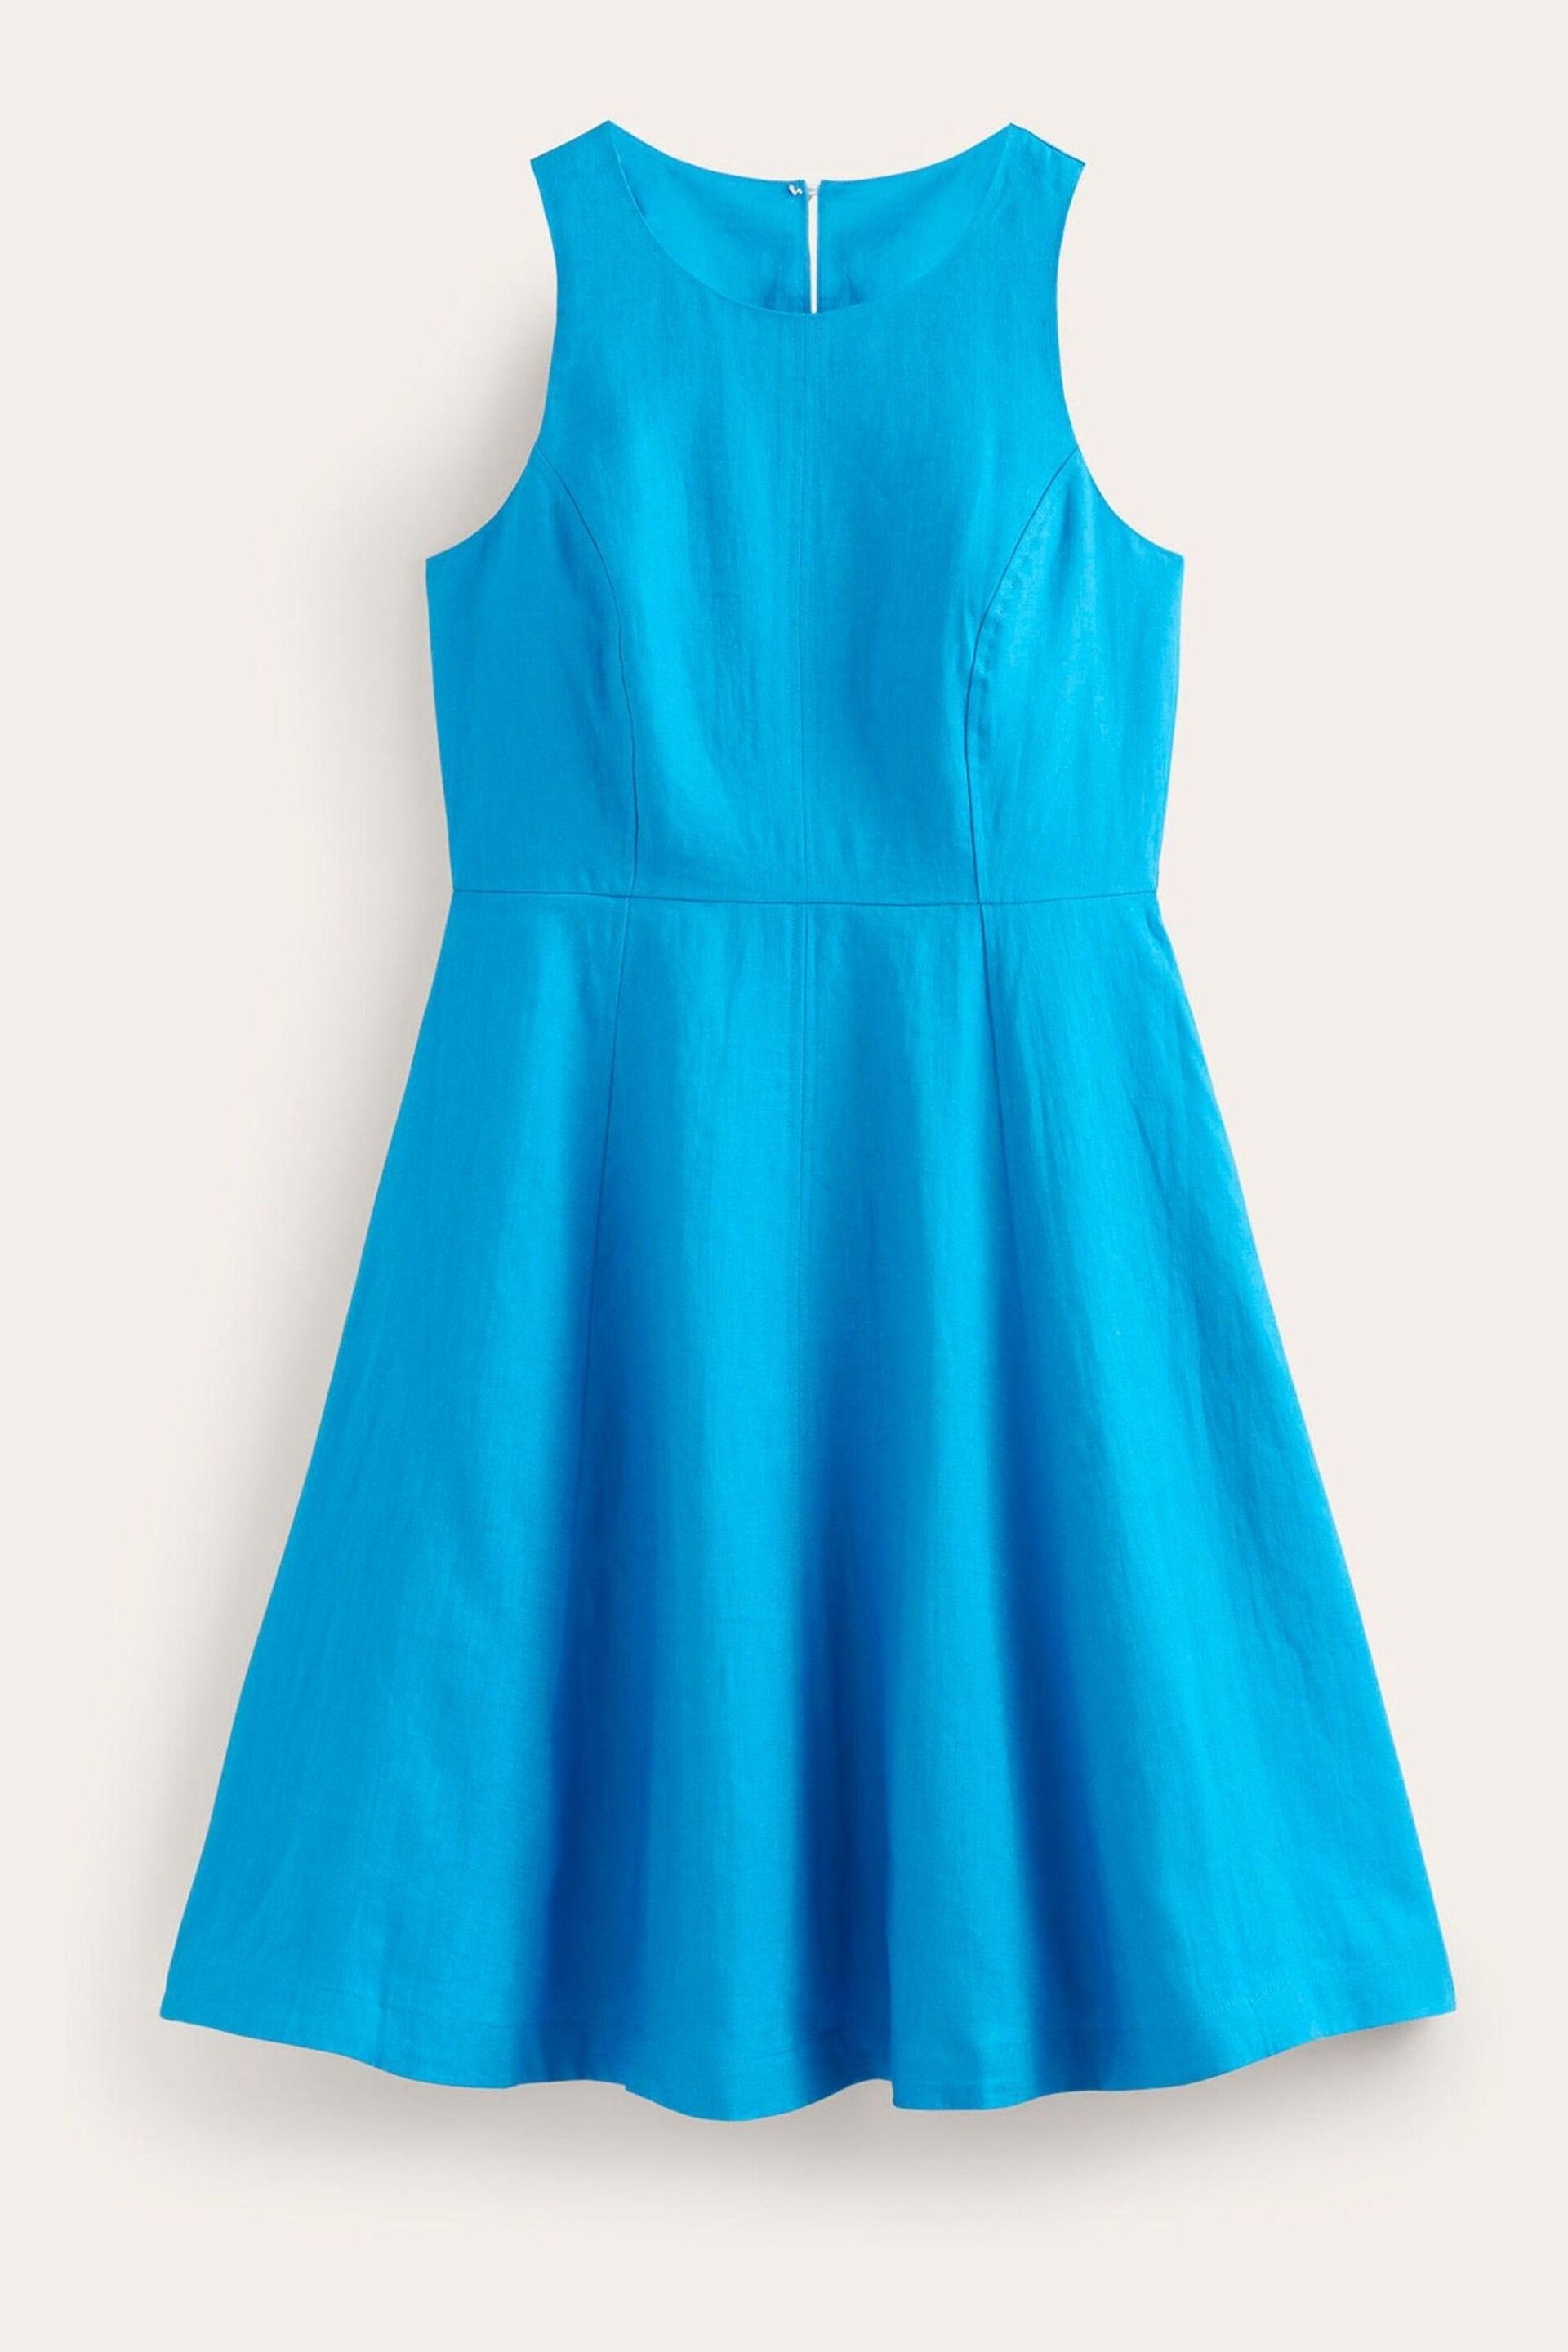 Boden Blue Carla Linen Short Dress - Image 6 of 6